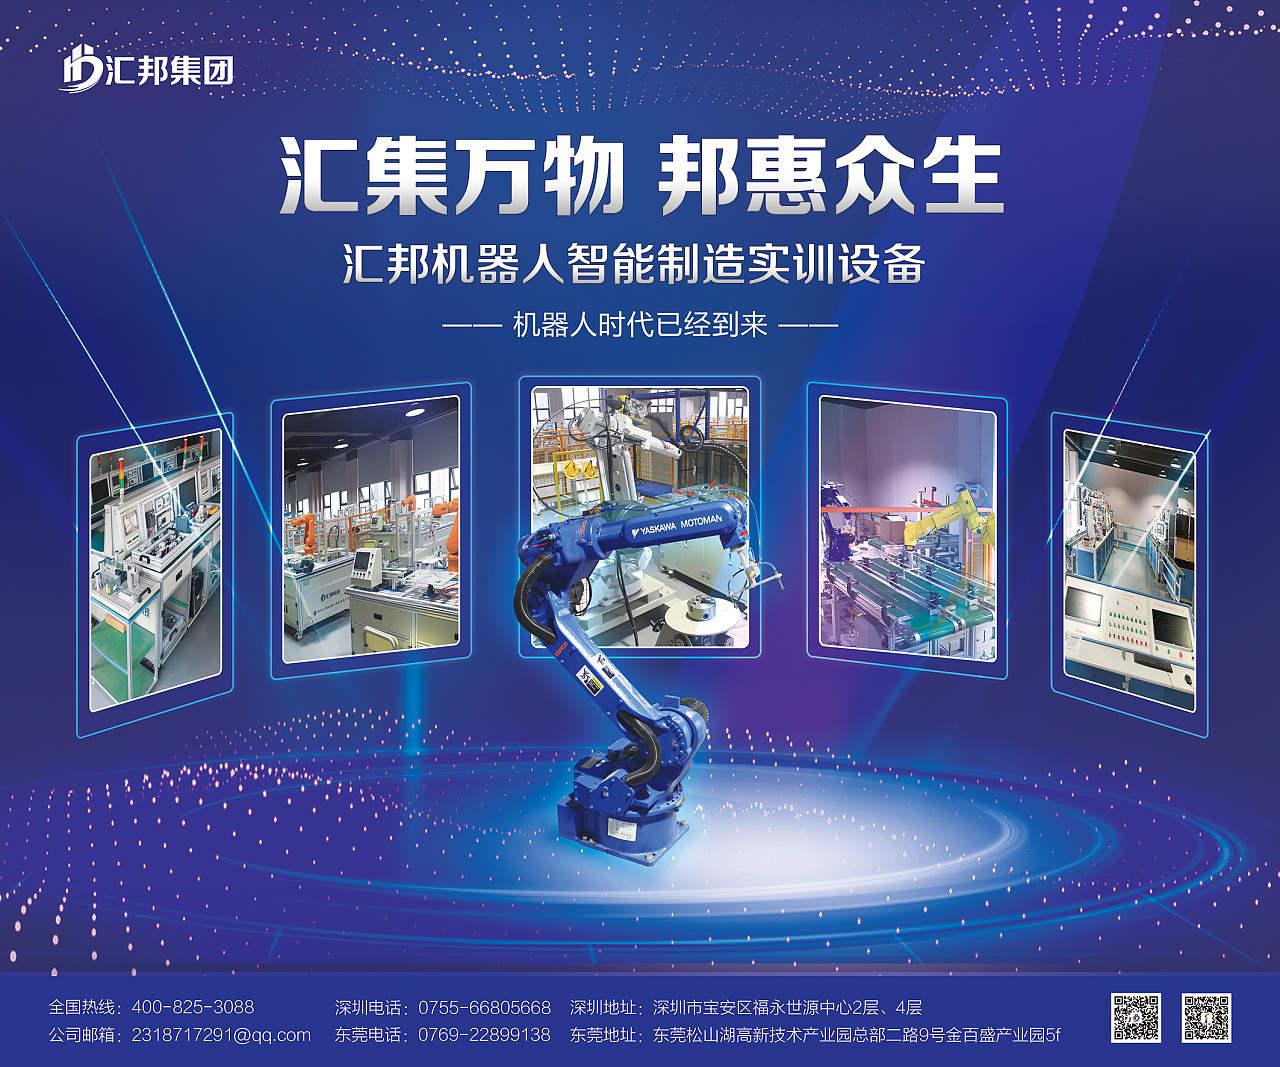 2018年深圳工业自动化展,公司展示设备的背景墙深圳